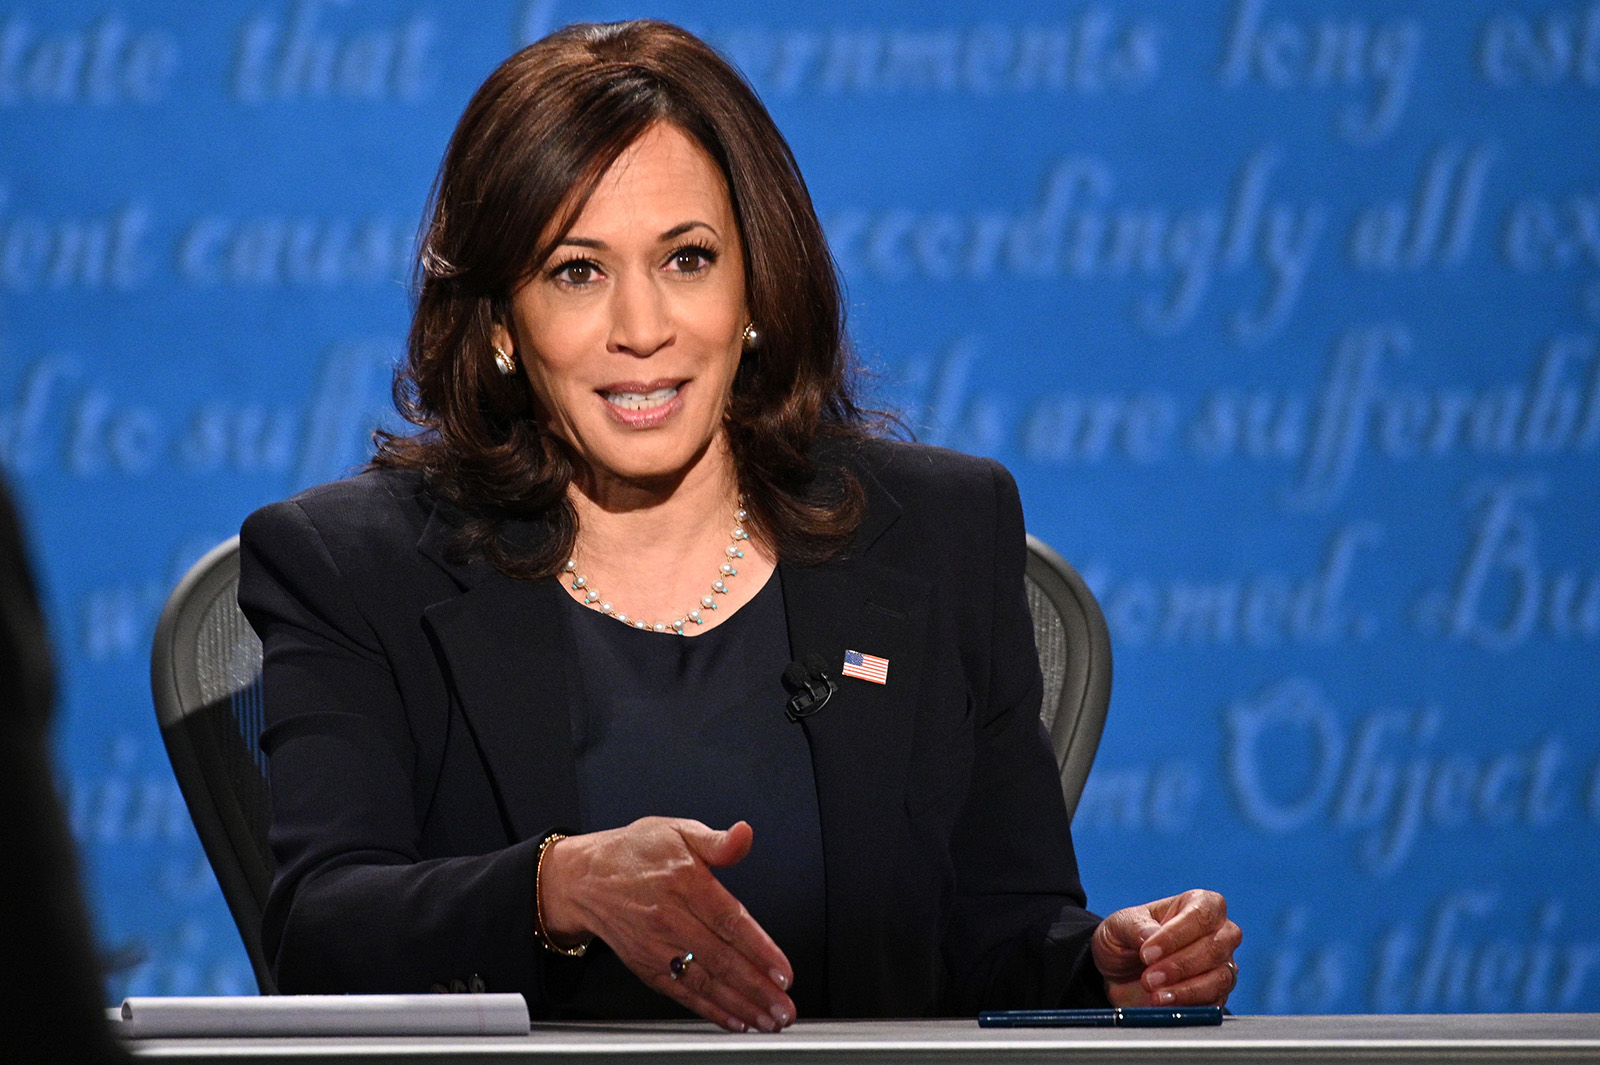 Democratic vice presidential nominee Kamala Harris gestures as she speaks during the vice presidential debate in Salt Lake City on Wednesday.